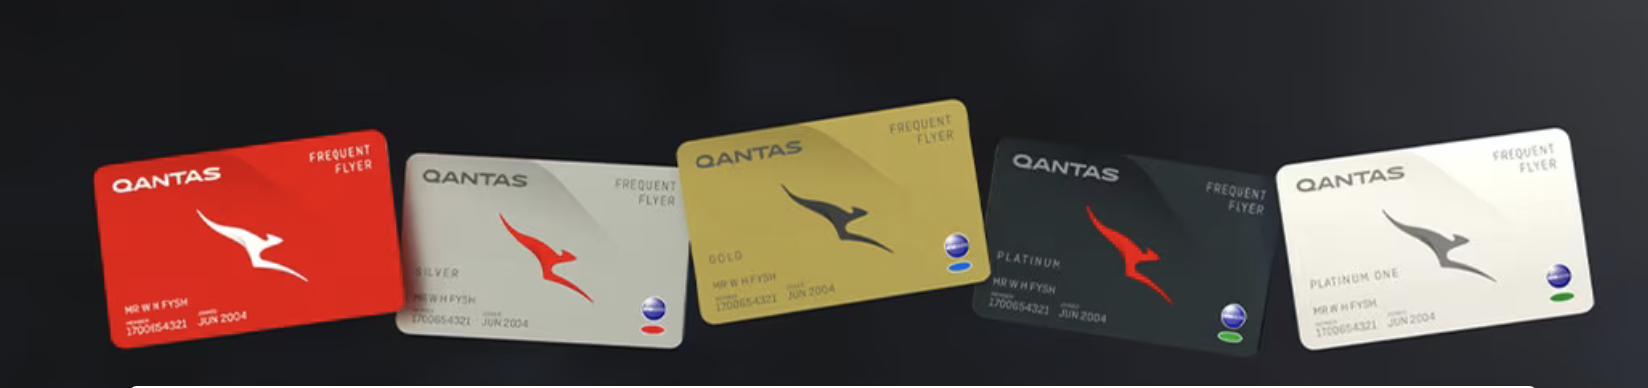 Qantas Double Points Promotion